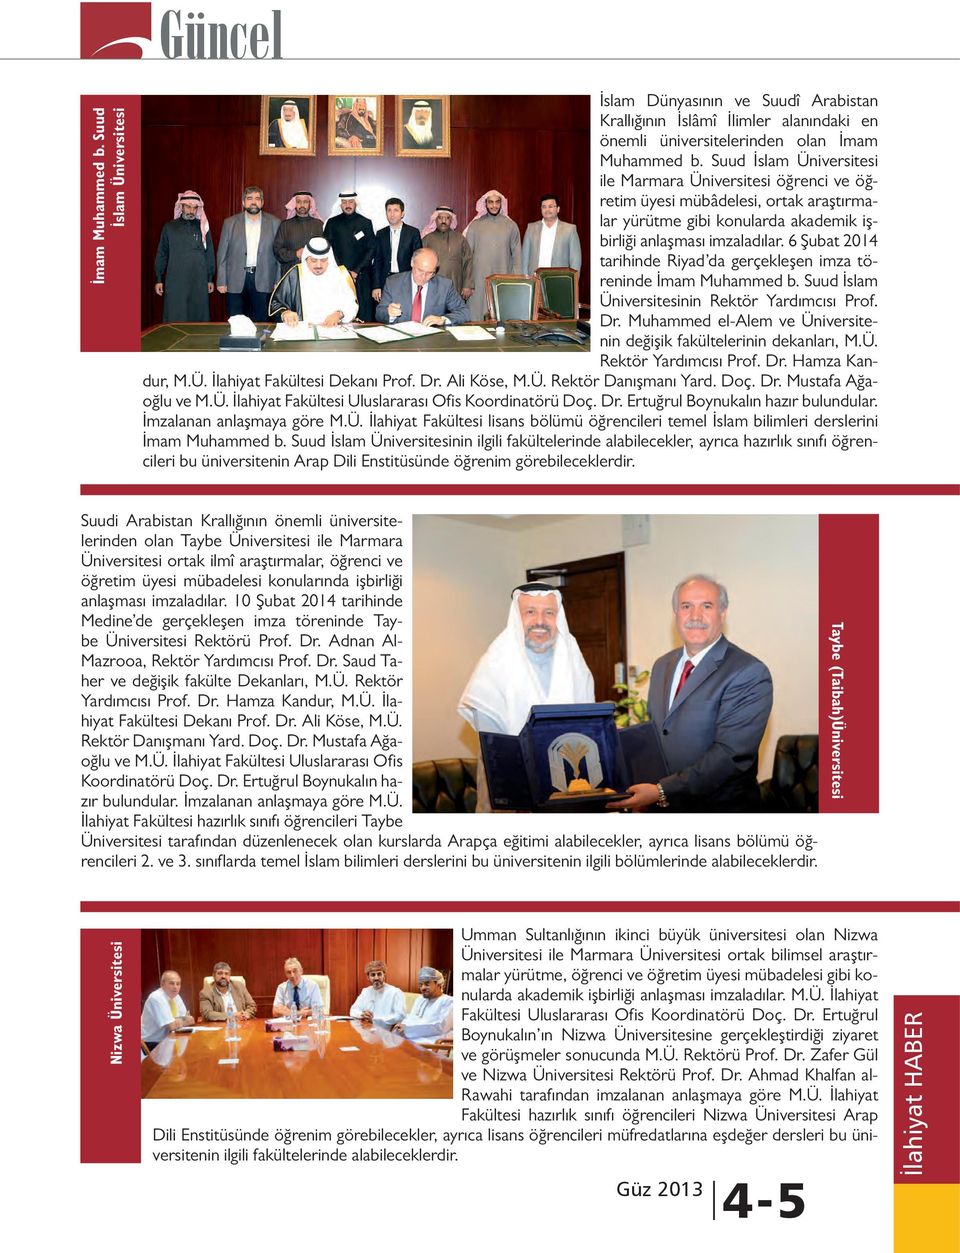 6 Şubat 2014 tarihinde Riyad da gerçekleşen imza töreninde İmam Muhammed b. Suud İslam Üniversitesinin Rektör Yardımcısı Prof. Dr.